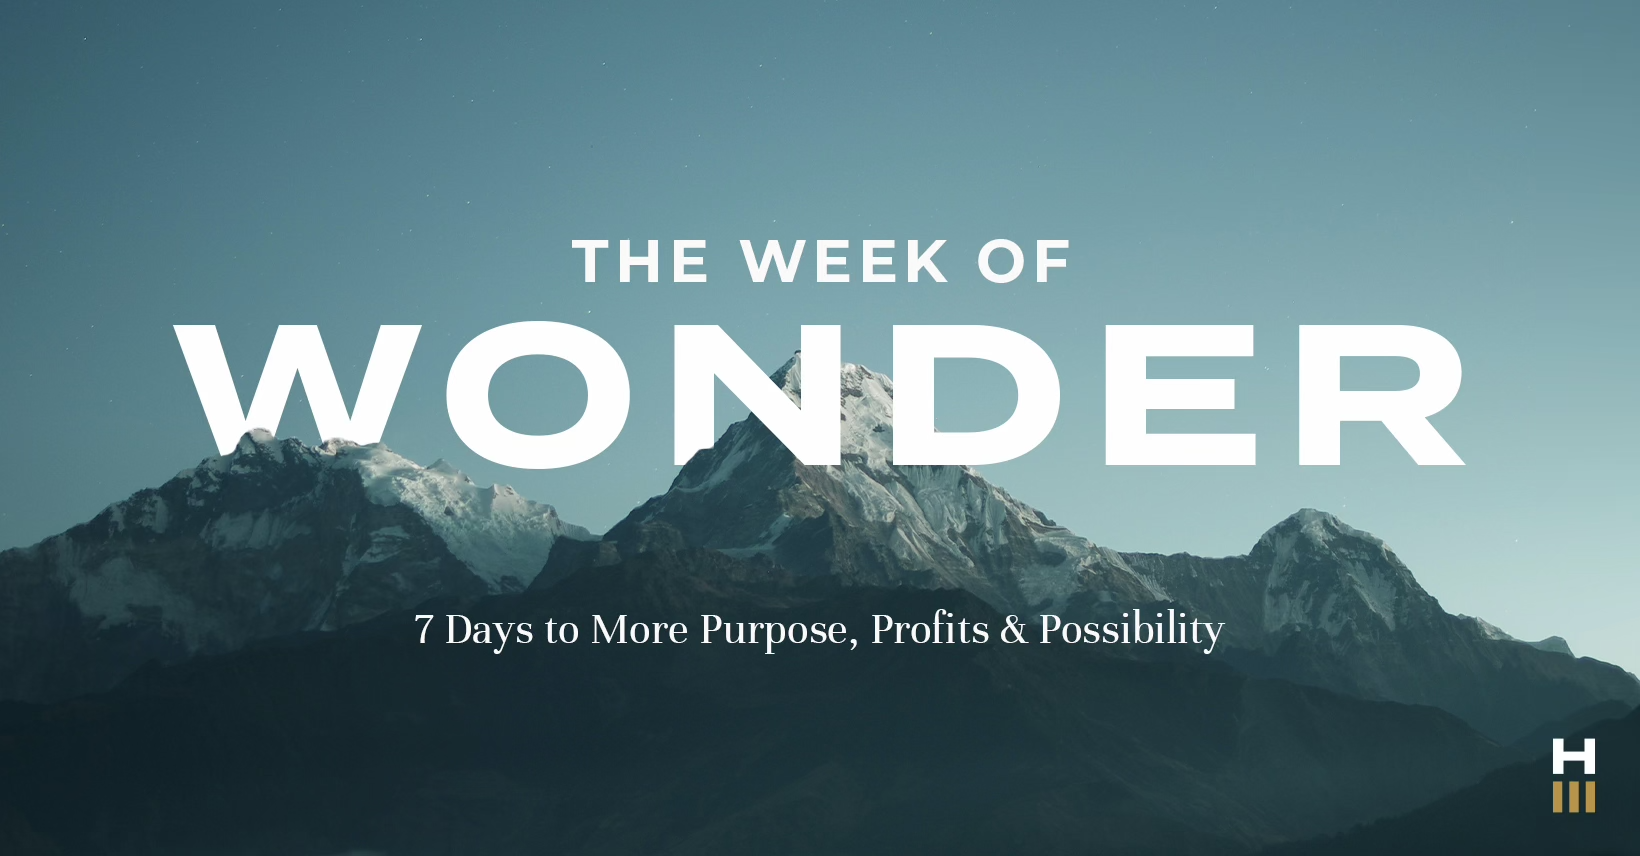 Week of Wonder